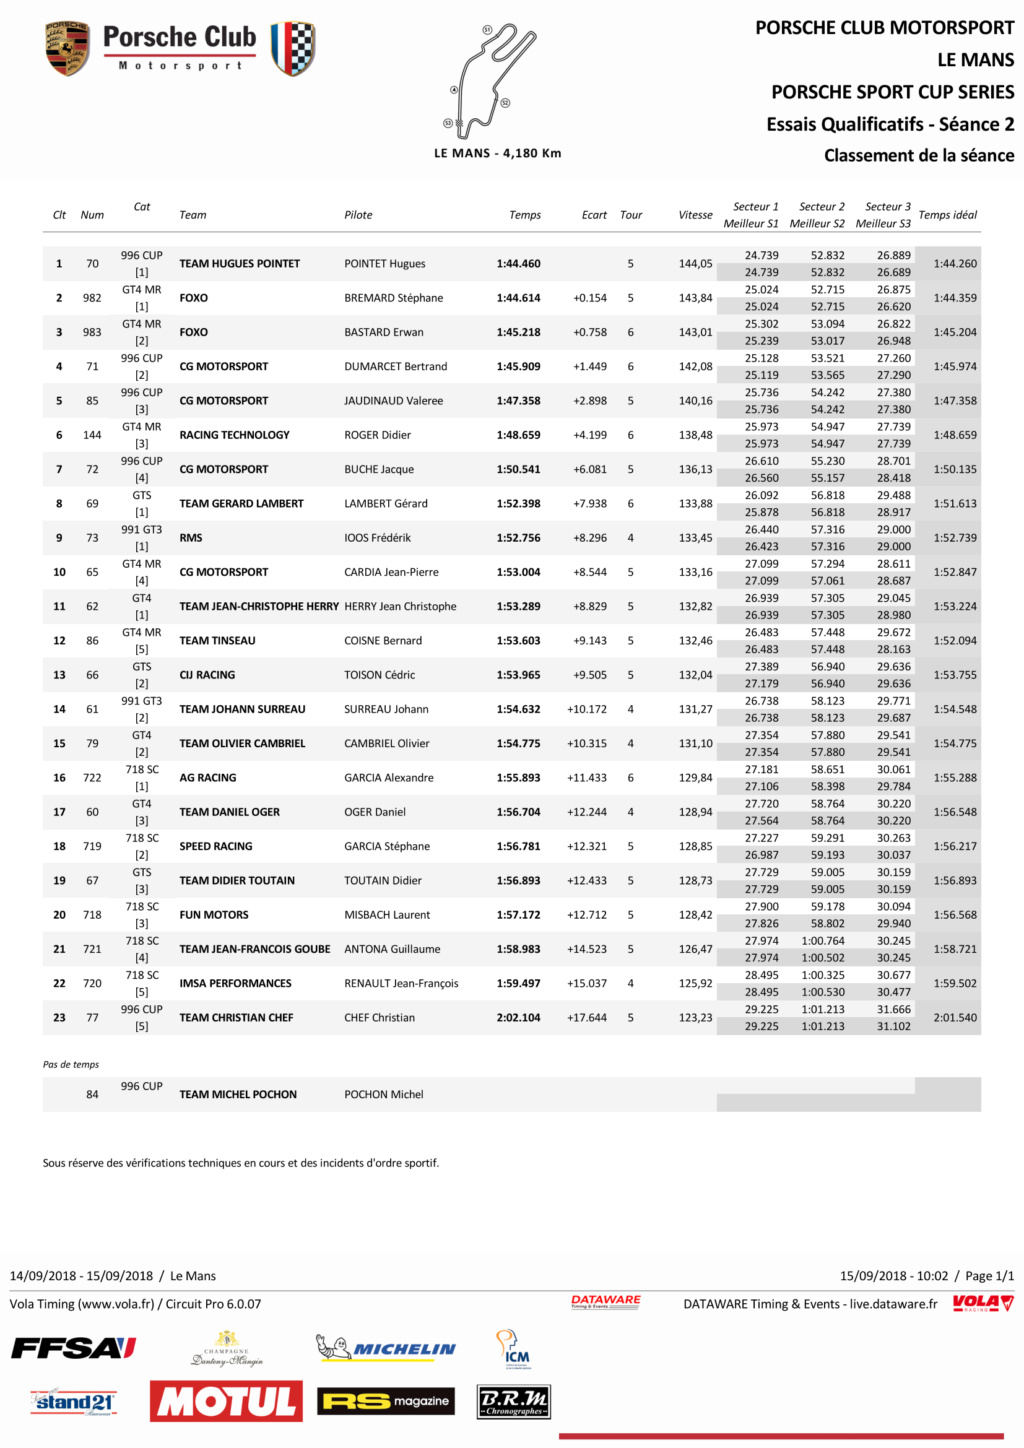  Porsche Motorsport Sport Cup Series 2018 ( post unique) - Page 2 Qualif11